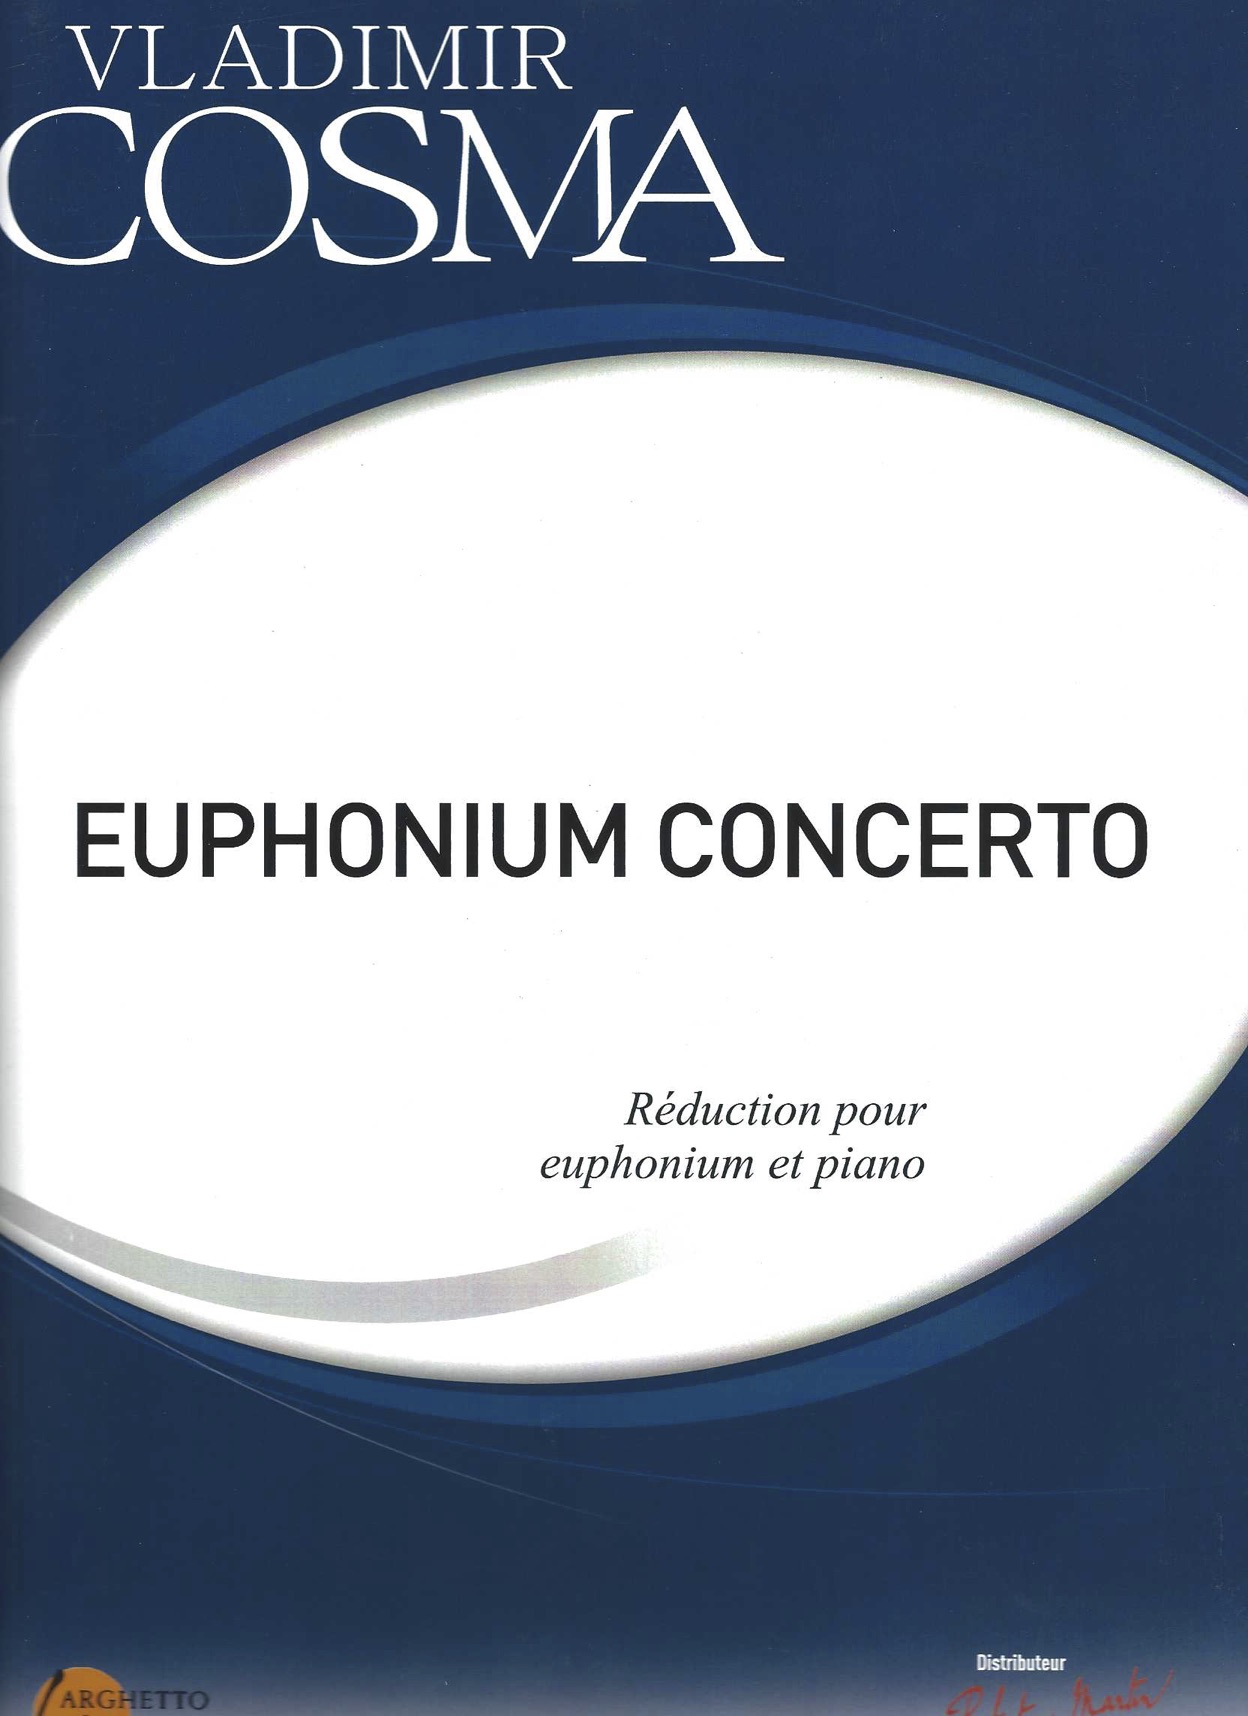 Euphonium Concerto - Vladimir Cosma - Euphonium and Piano 